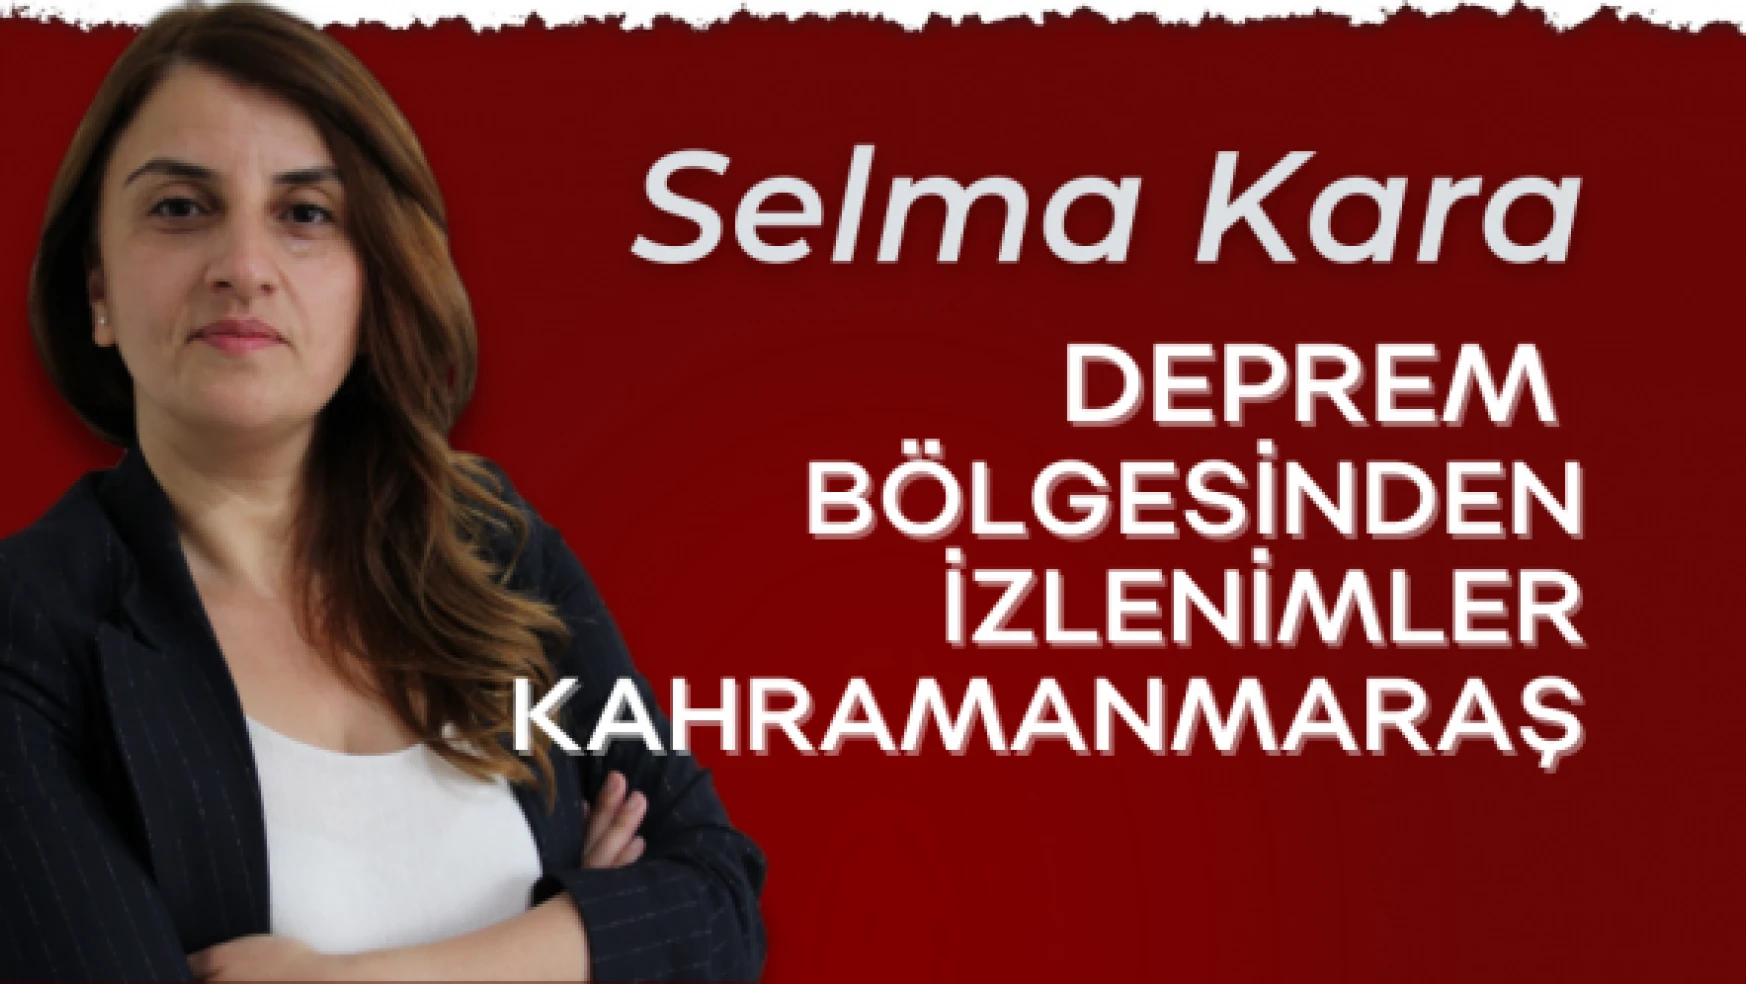 Gazeteci Selma Kara yazdı: &quotDeprem bölgesinden izlenimler - Kahramanmaraş"